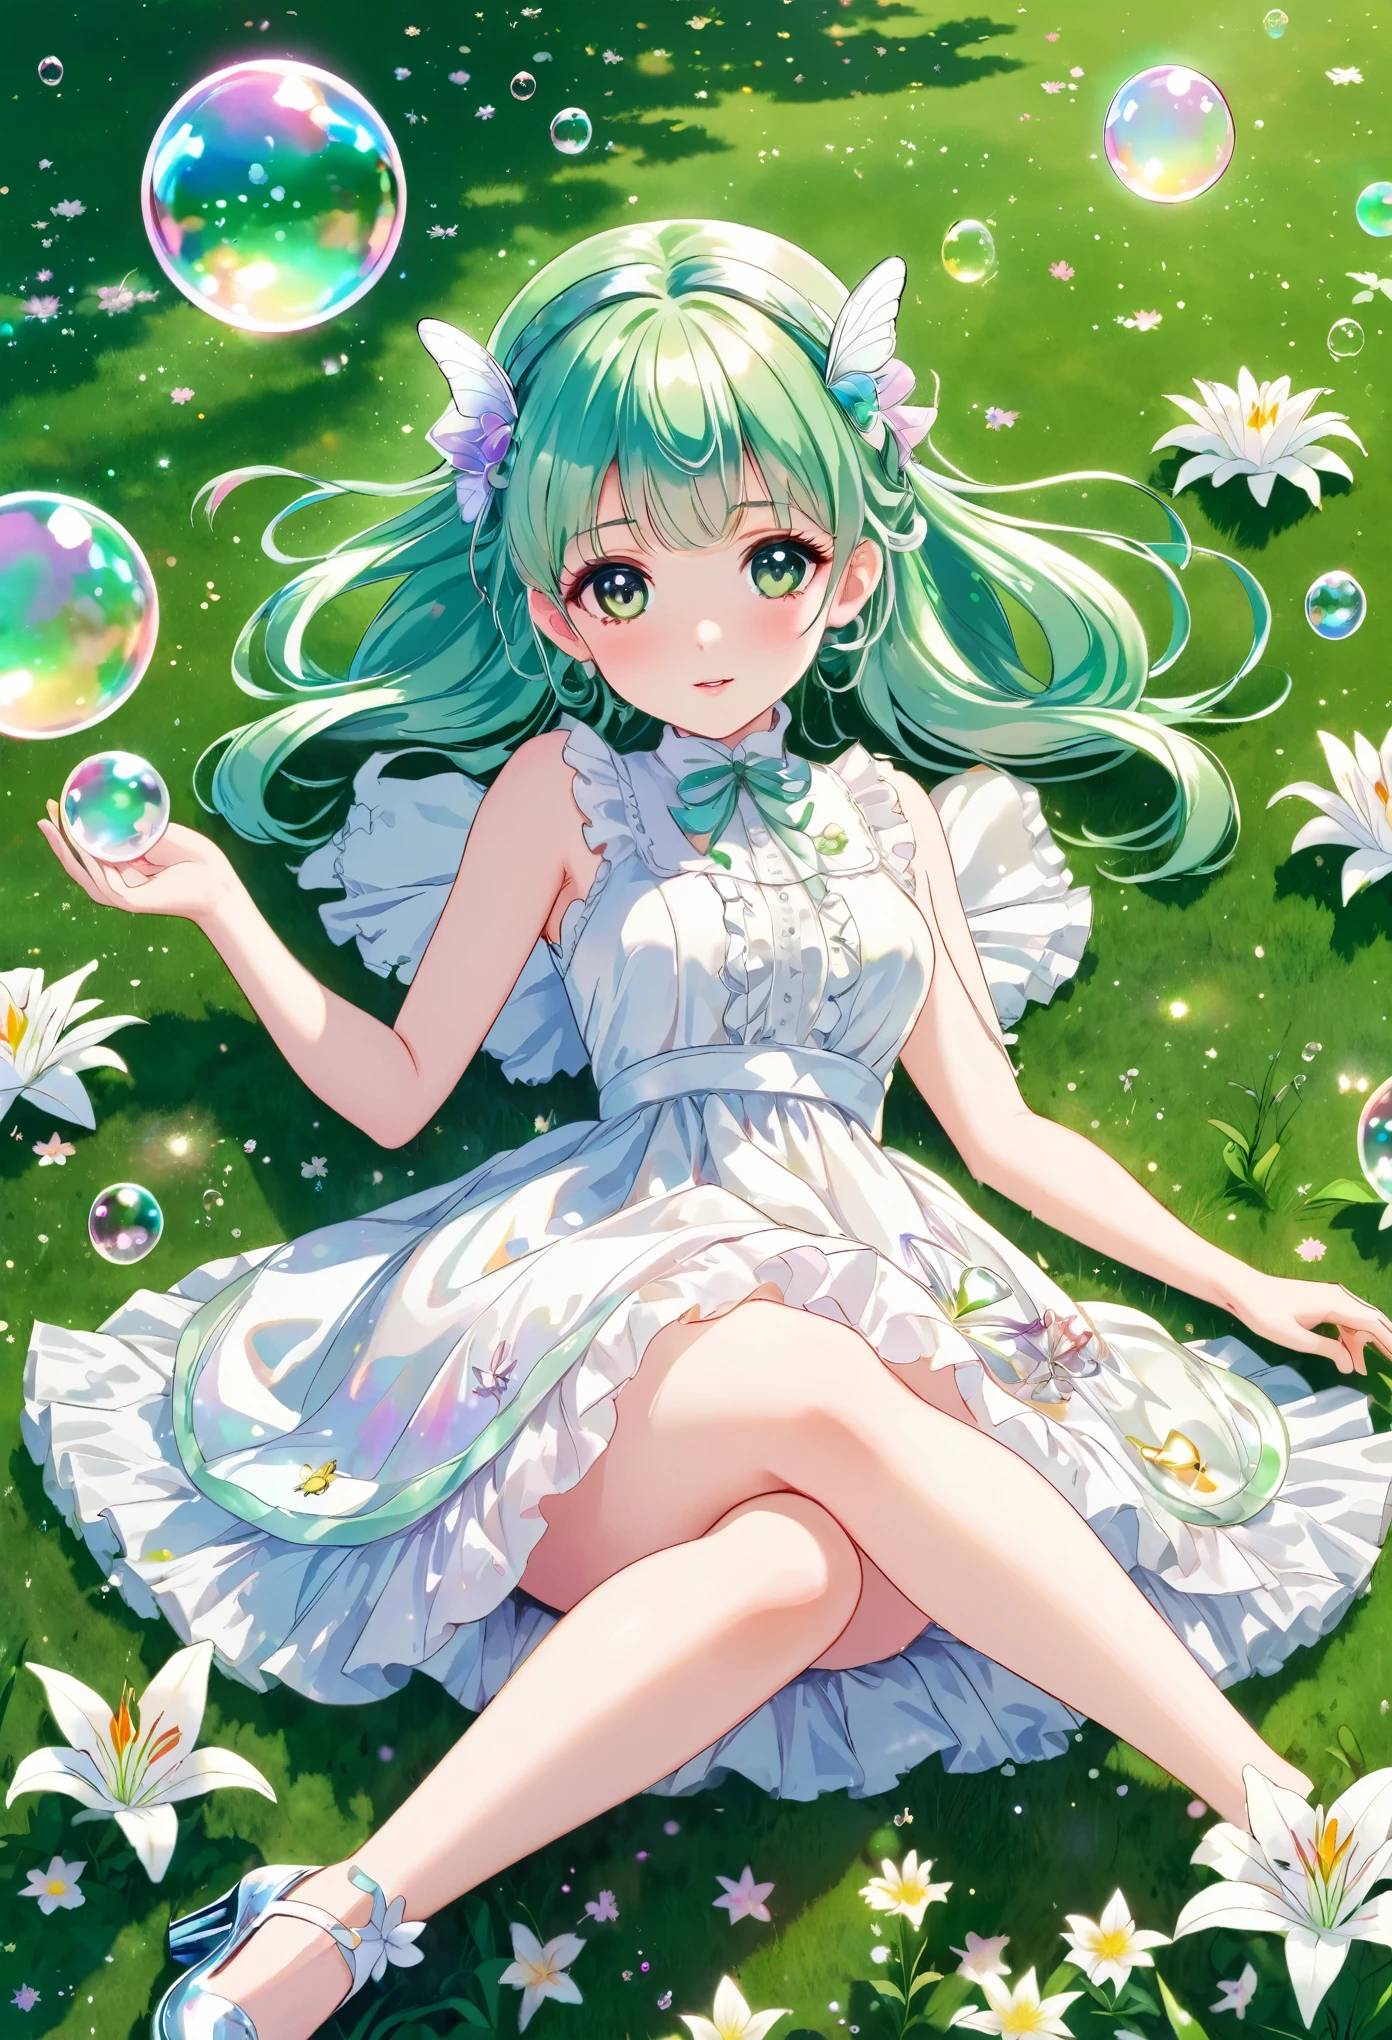 Anime-Serie, eine Fee mit hologrammfarbenen Haaren und einem weißen Lolitakleid und Glasschuhen liegt tagsüber auf grünem Gras mit Lilienblüten. Es gibt Hologramm-Seifenblasen und Hologramm-farbige Schmetterlinge.